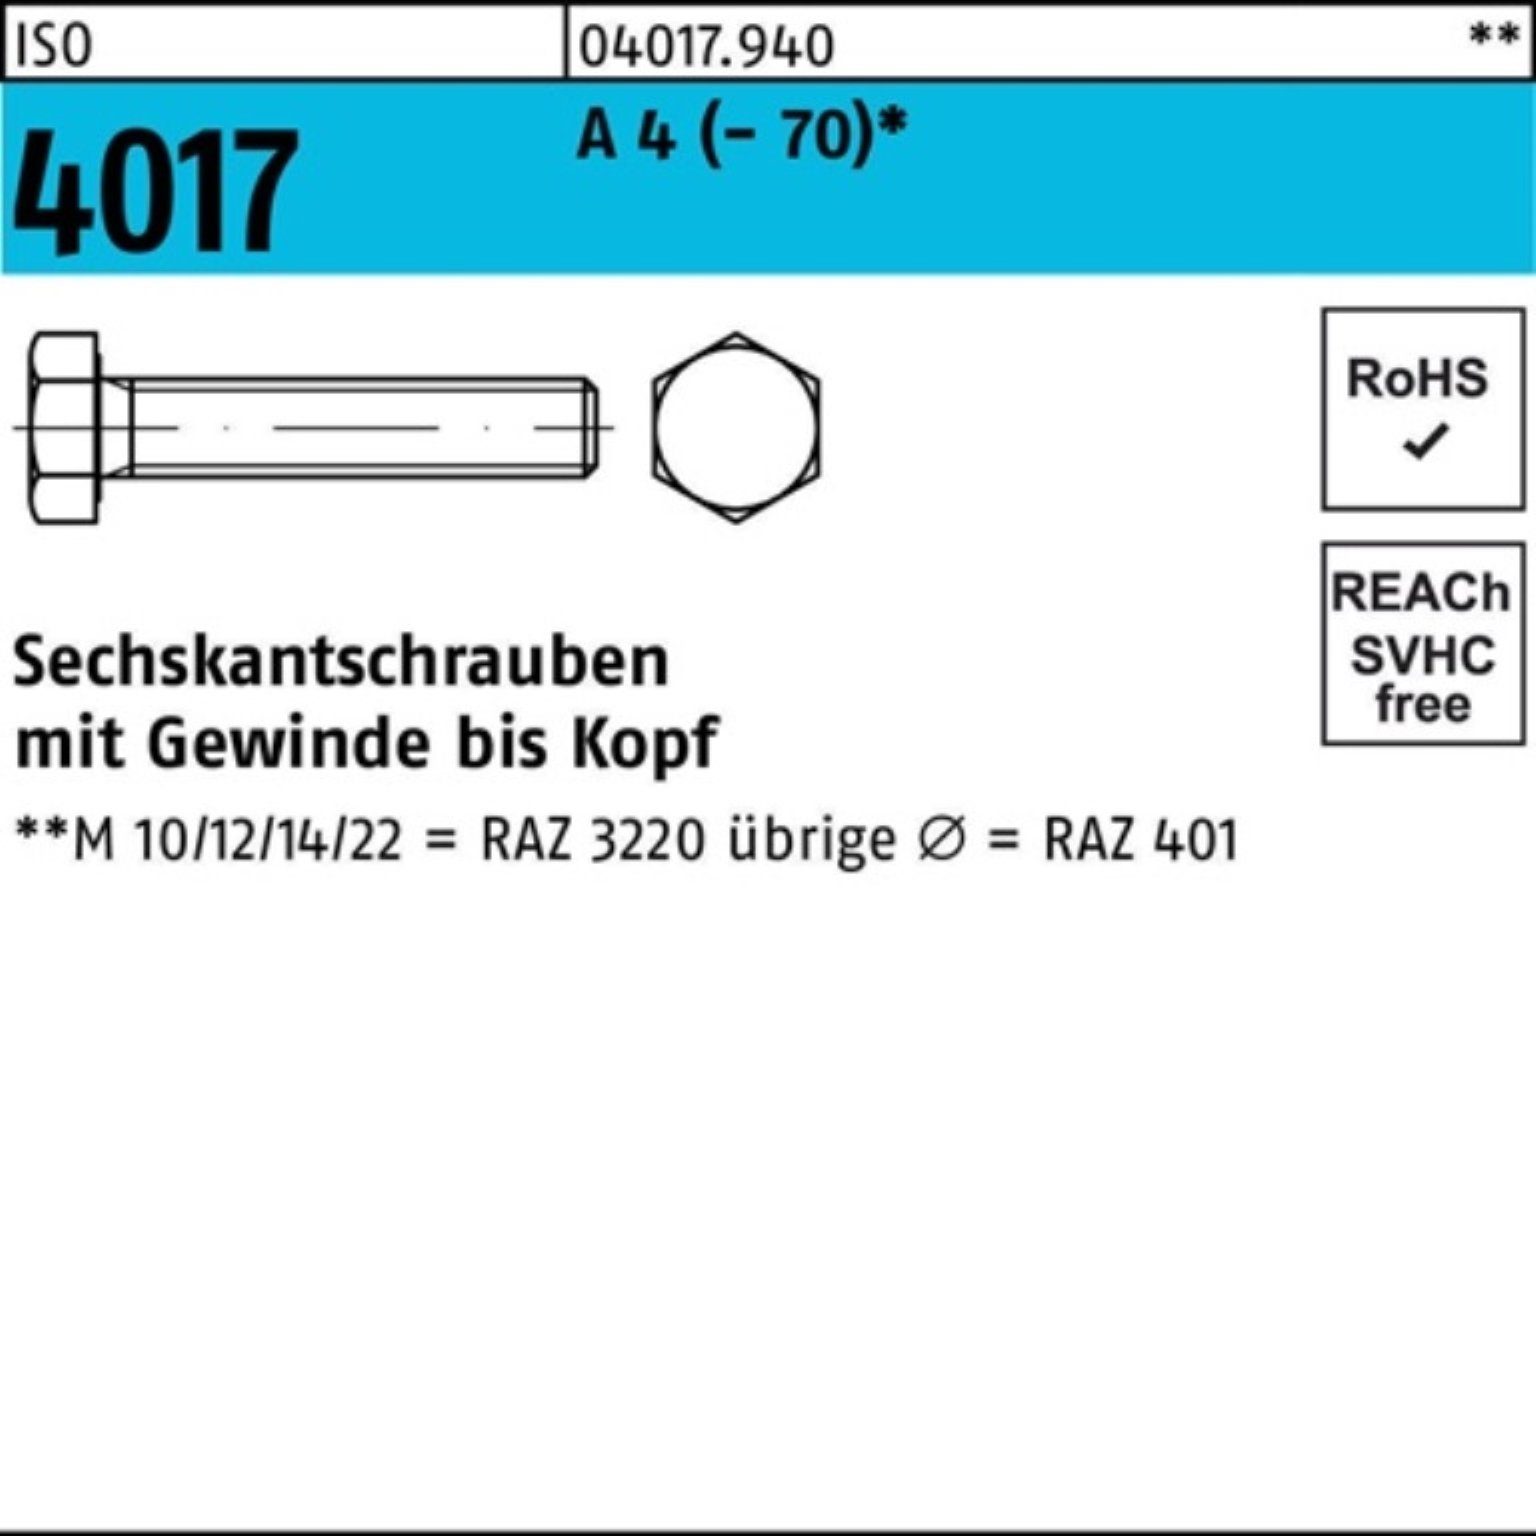 Bufab Sechskantschraube 100er Pack Sechskantschraube ISO 4017 VG M16x 140 A 4 (70) 1 Stück